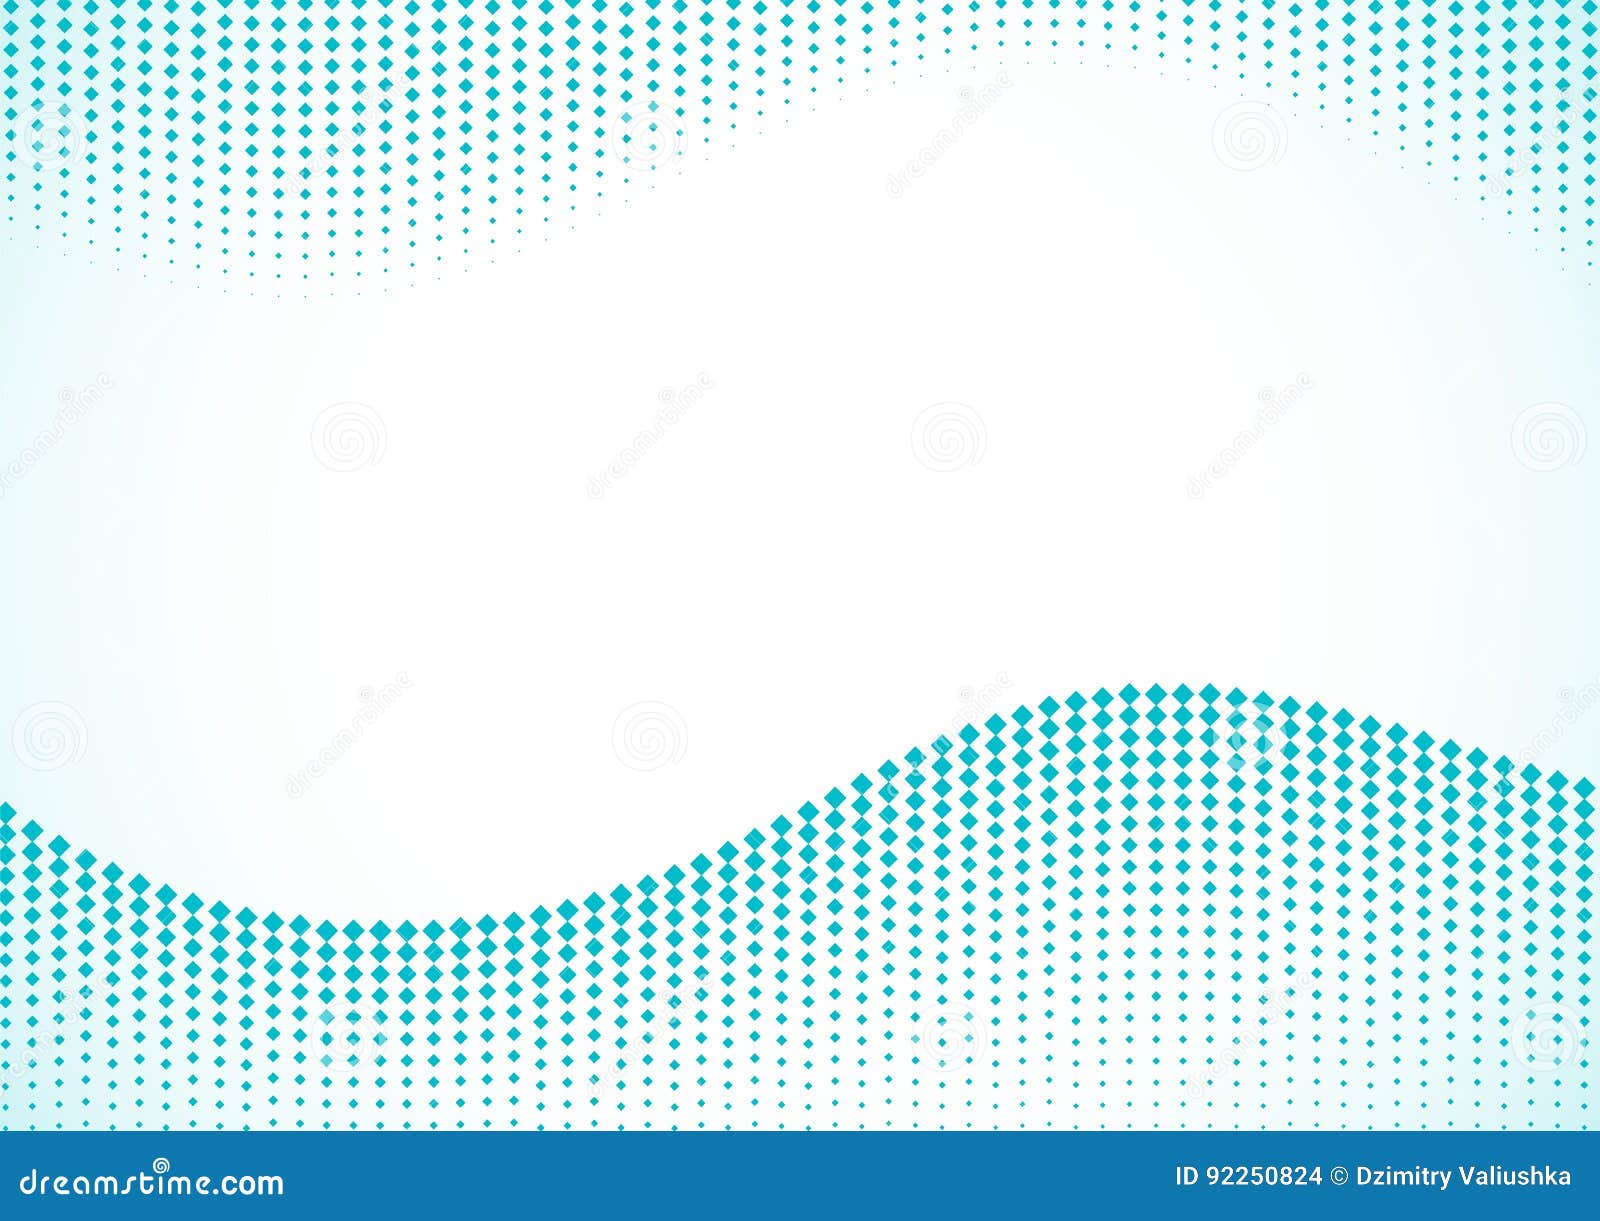 вектор текста космоса логоса иллюстрации halftone предпосылки голубой Волна вектора поставленная точки Smoot